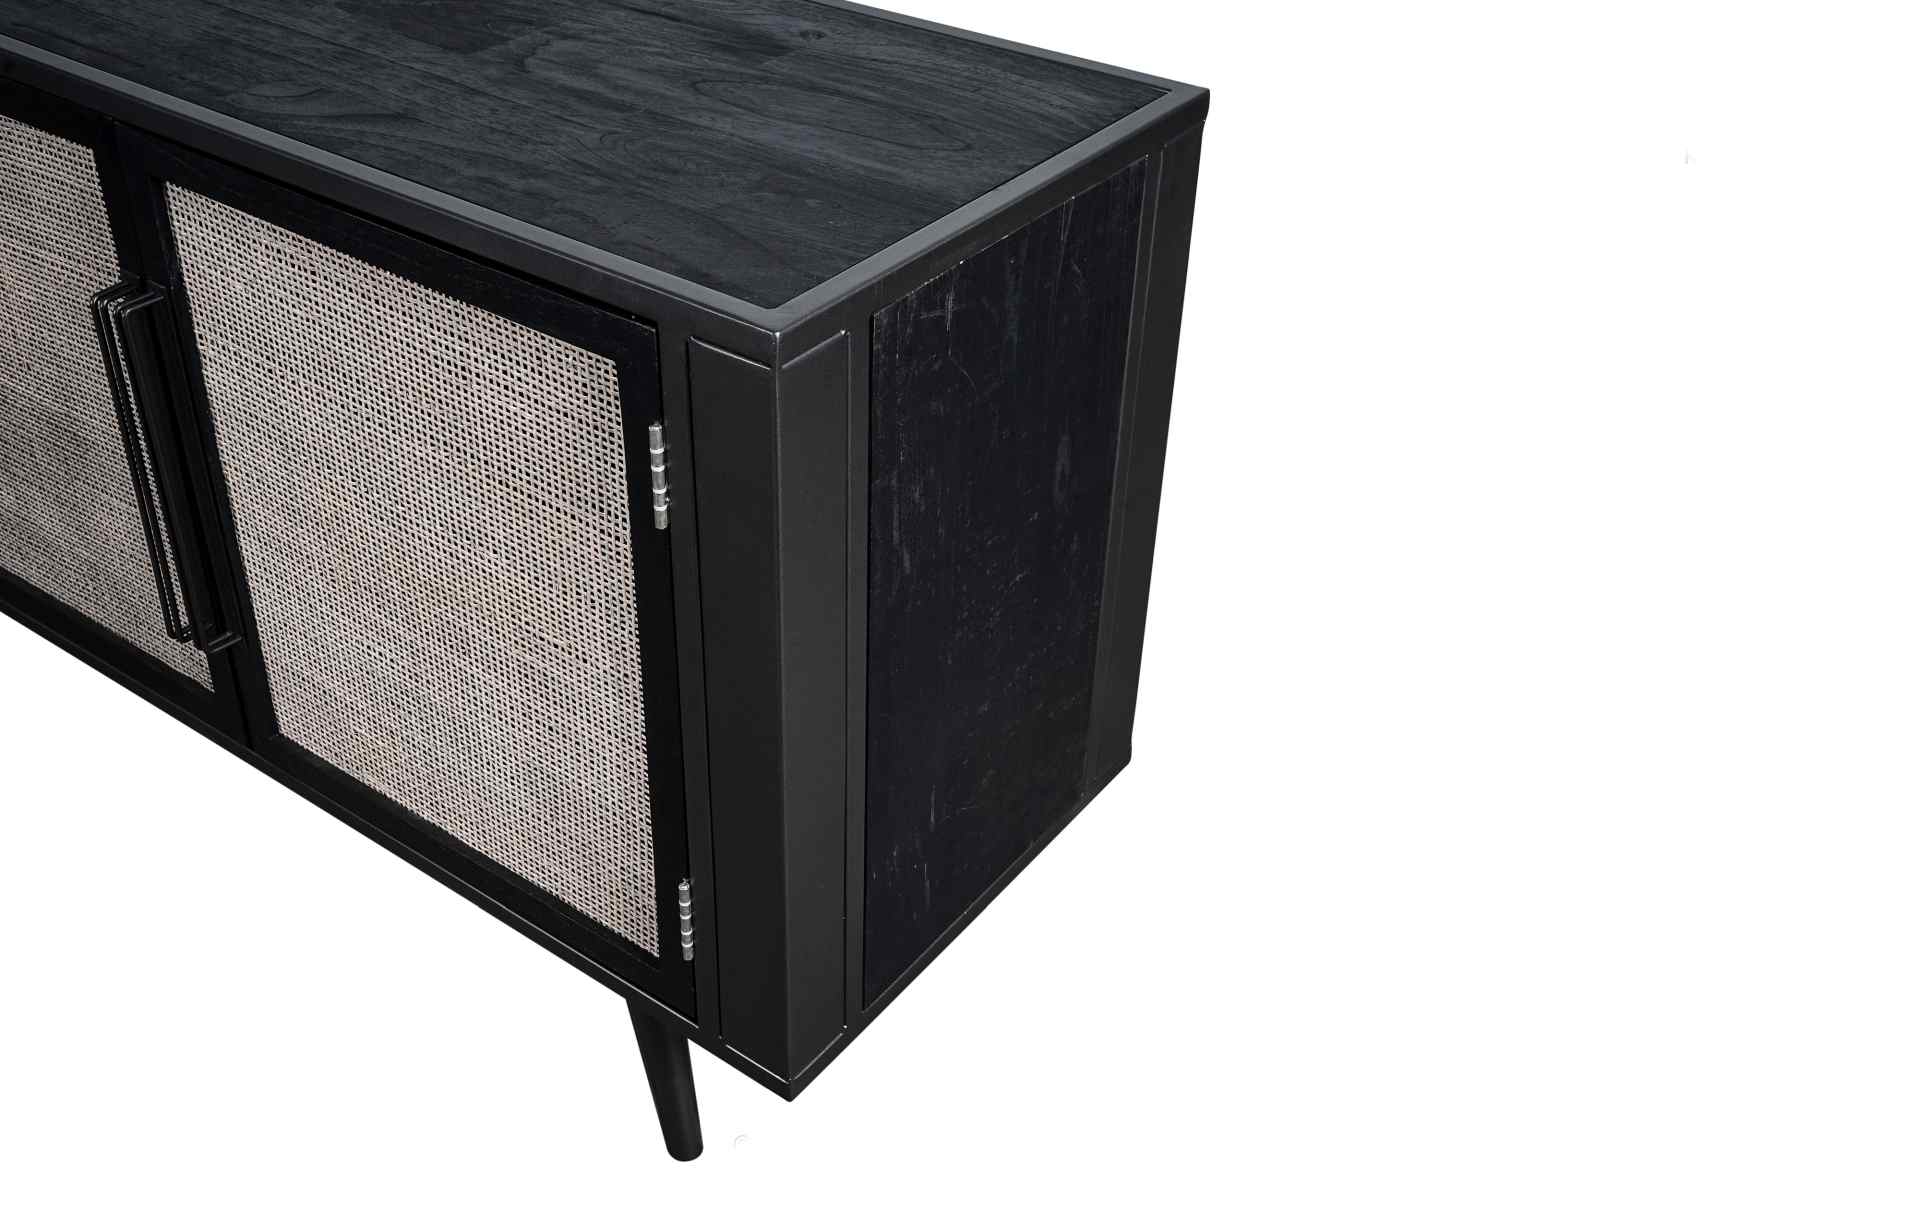 Das TV-Board Nordic Mindi Rattan überzeugt mit seinem Industriellen Design. Gefertigt wurde es aus Rattan und Mindi Holz, welches einen schwarzen Farbton besitzt. Das Gestell ist aus Metall und hat eine schwarze Farbe. Das TV-Board verfügt über drei Türen